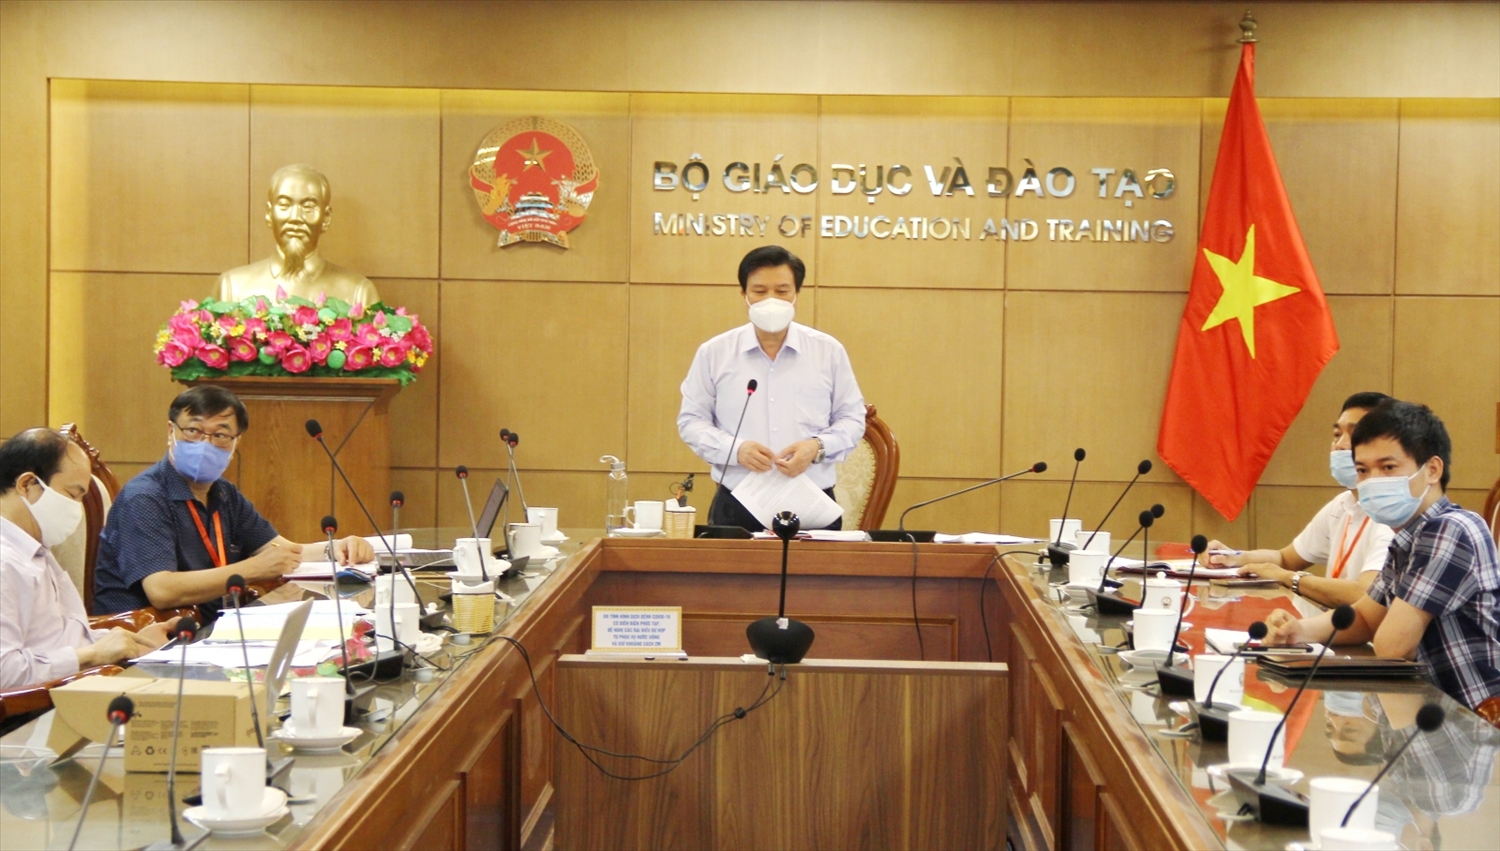 Thứ trưởng Bộ GD&ĐT Nguyễn Hữu Độ phát biểu tại cuộc họp chiều ngày 4/8/2021. Ảnh: BGDTĐ